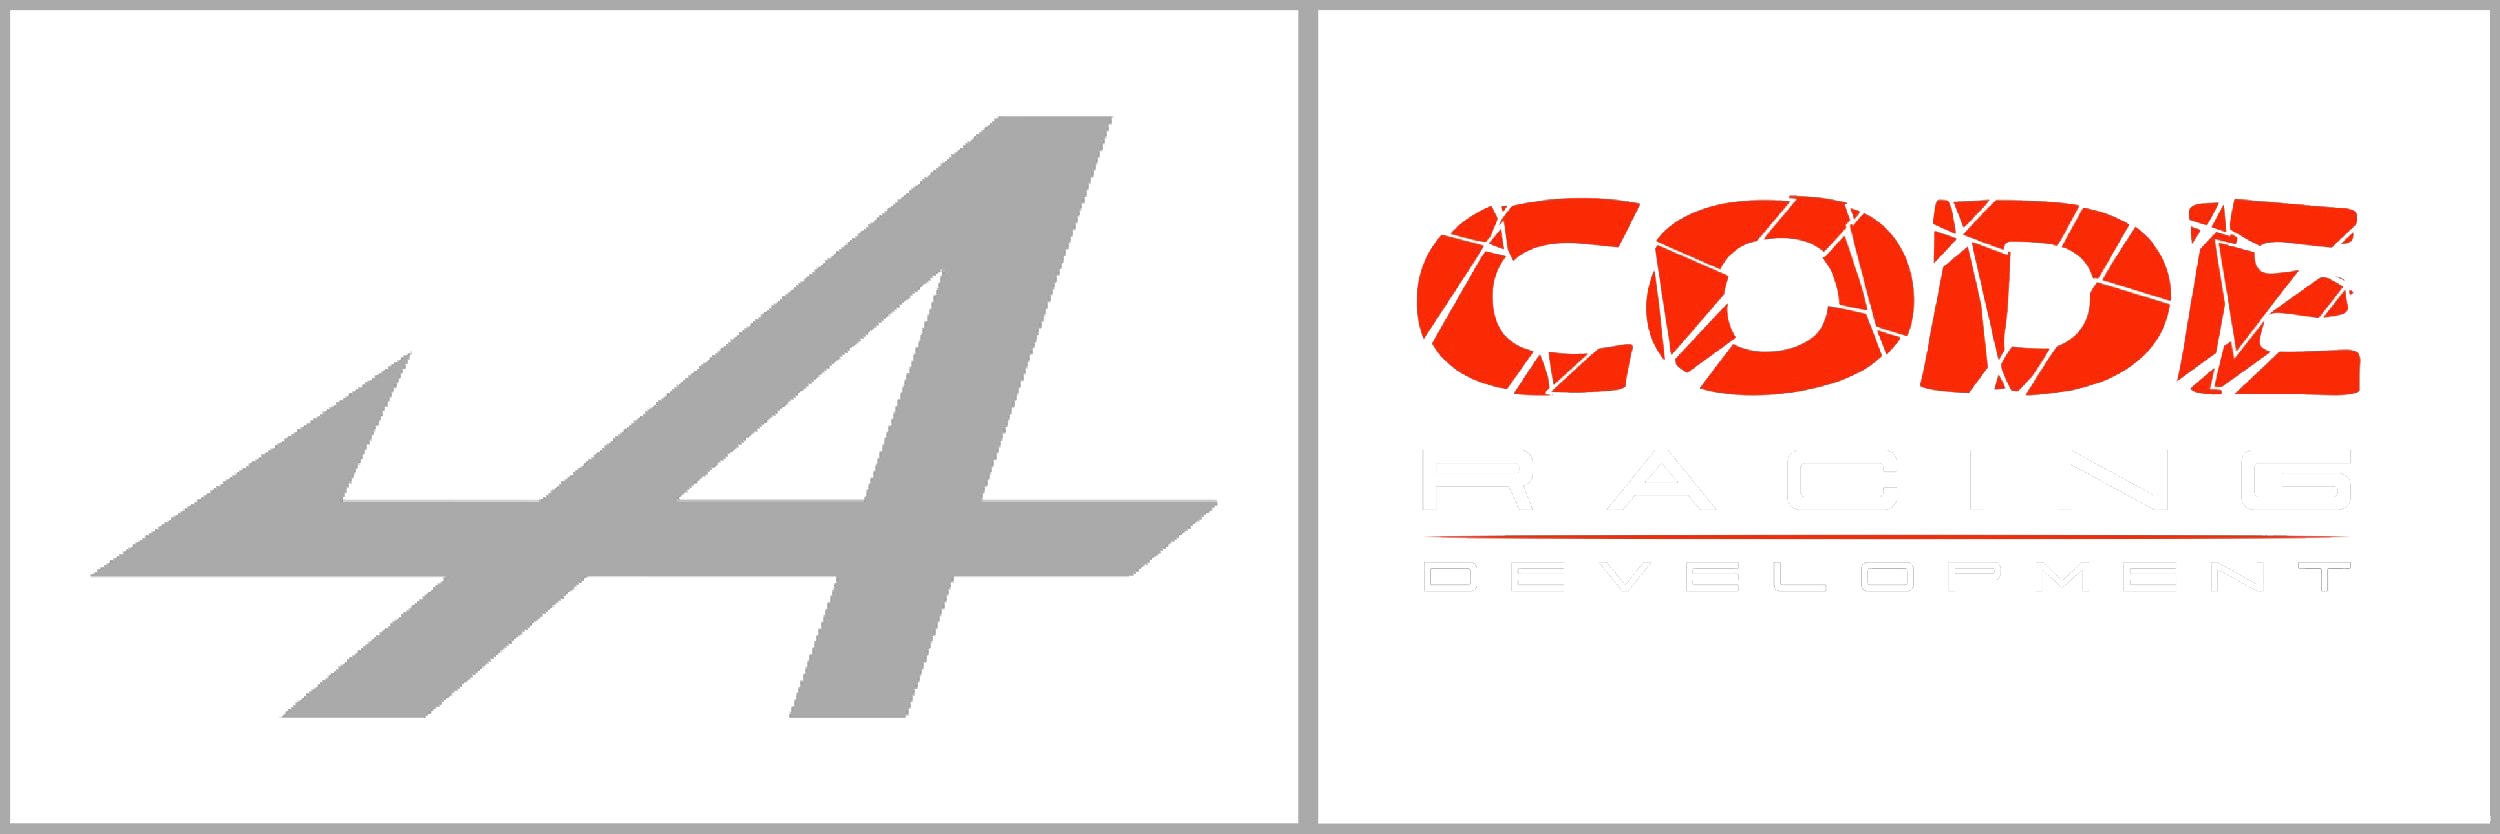 Code Racing Development